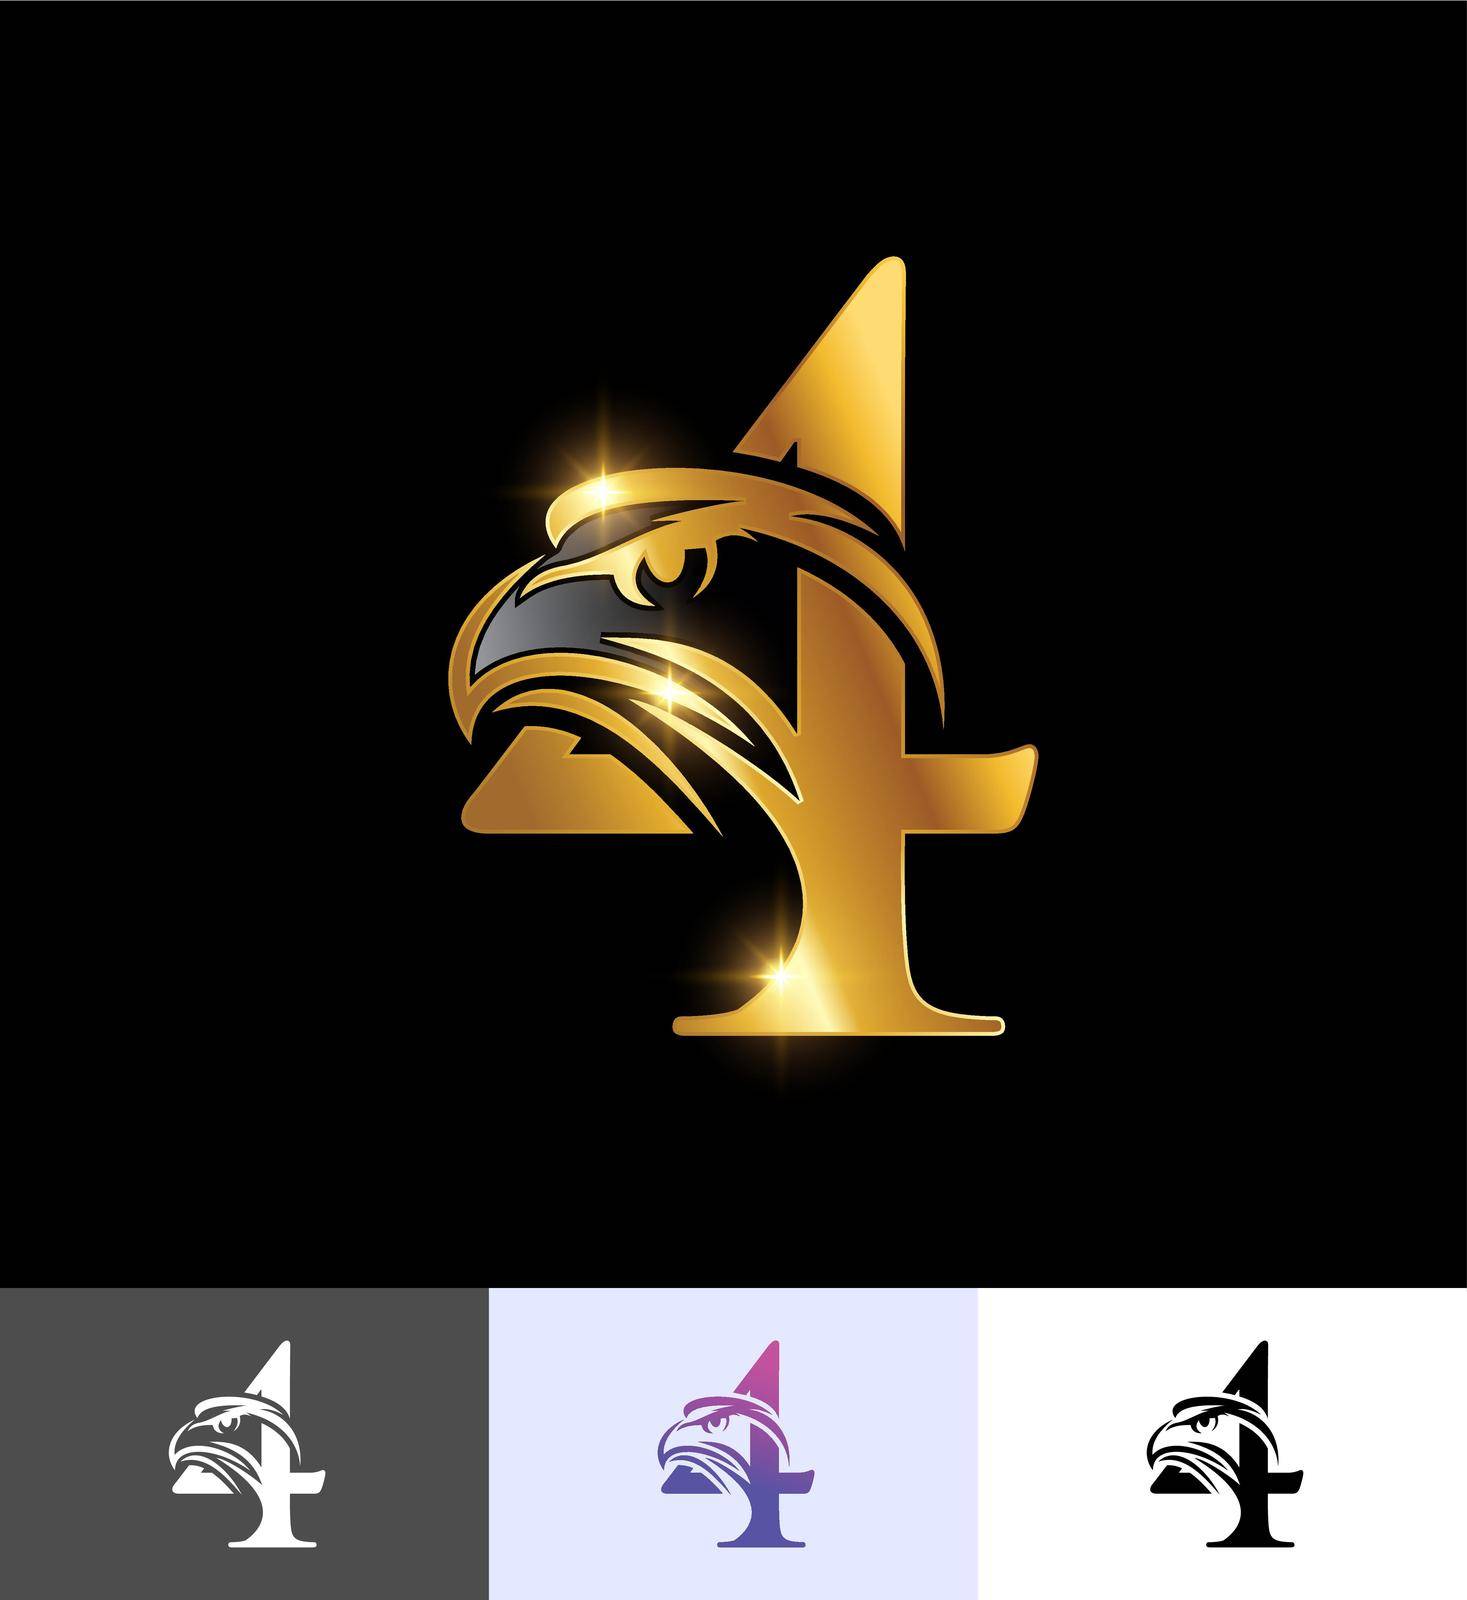 A vector illustration set of Golden Eagle Monogram Number 4 in black background with gold shine effect